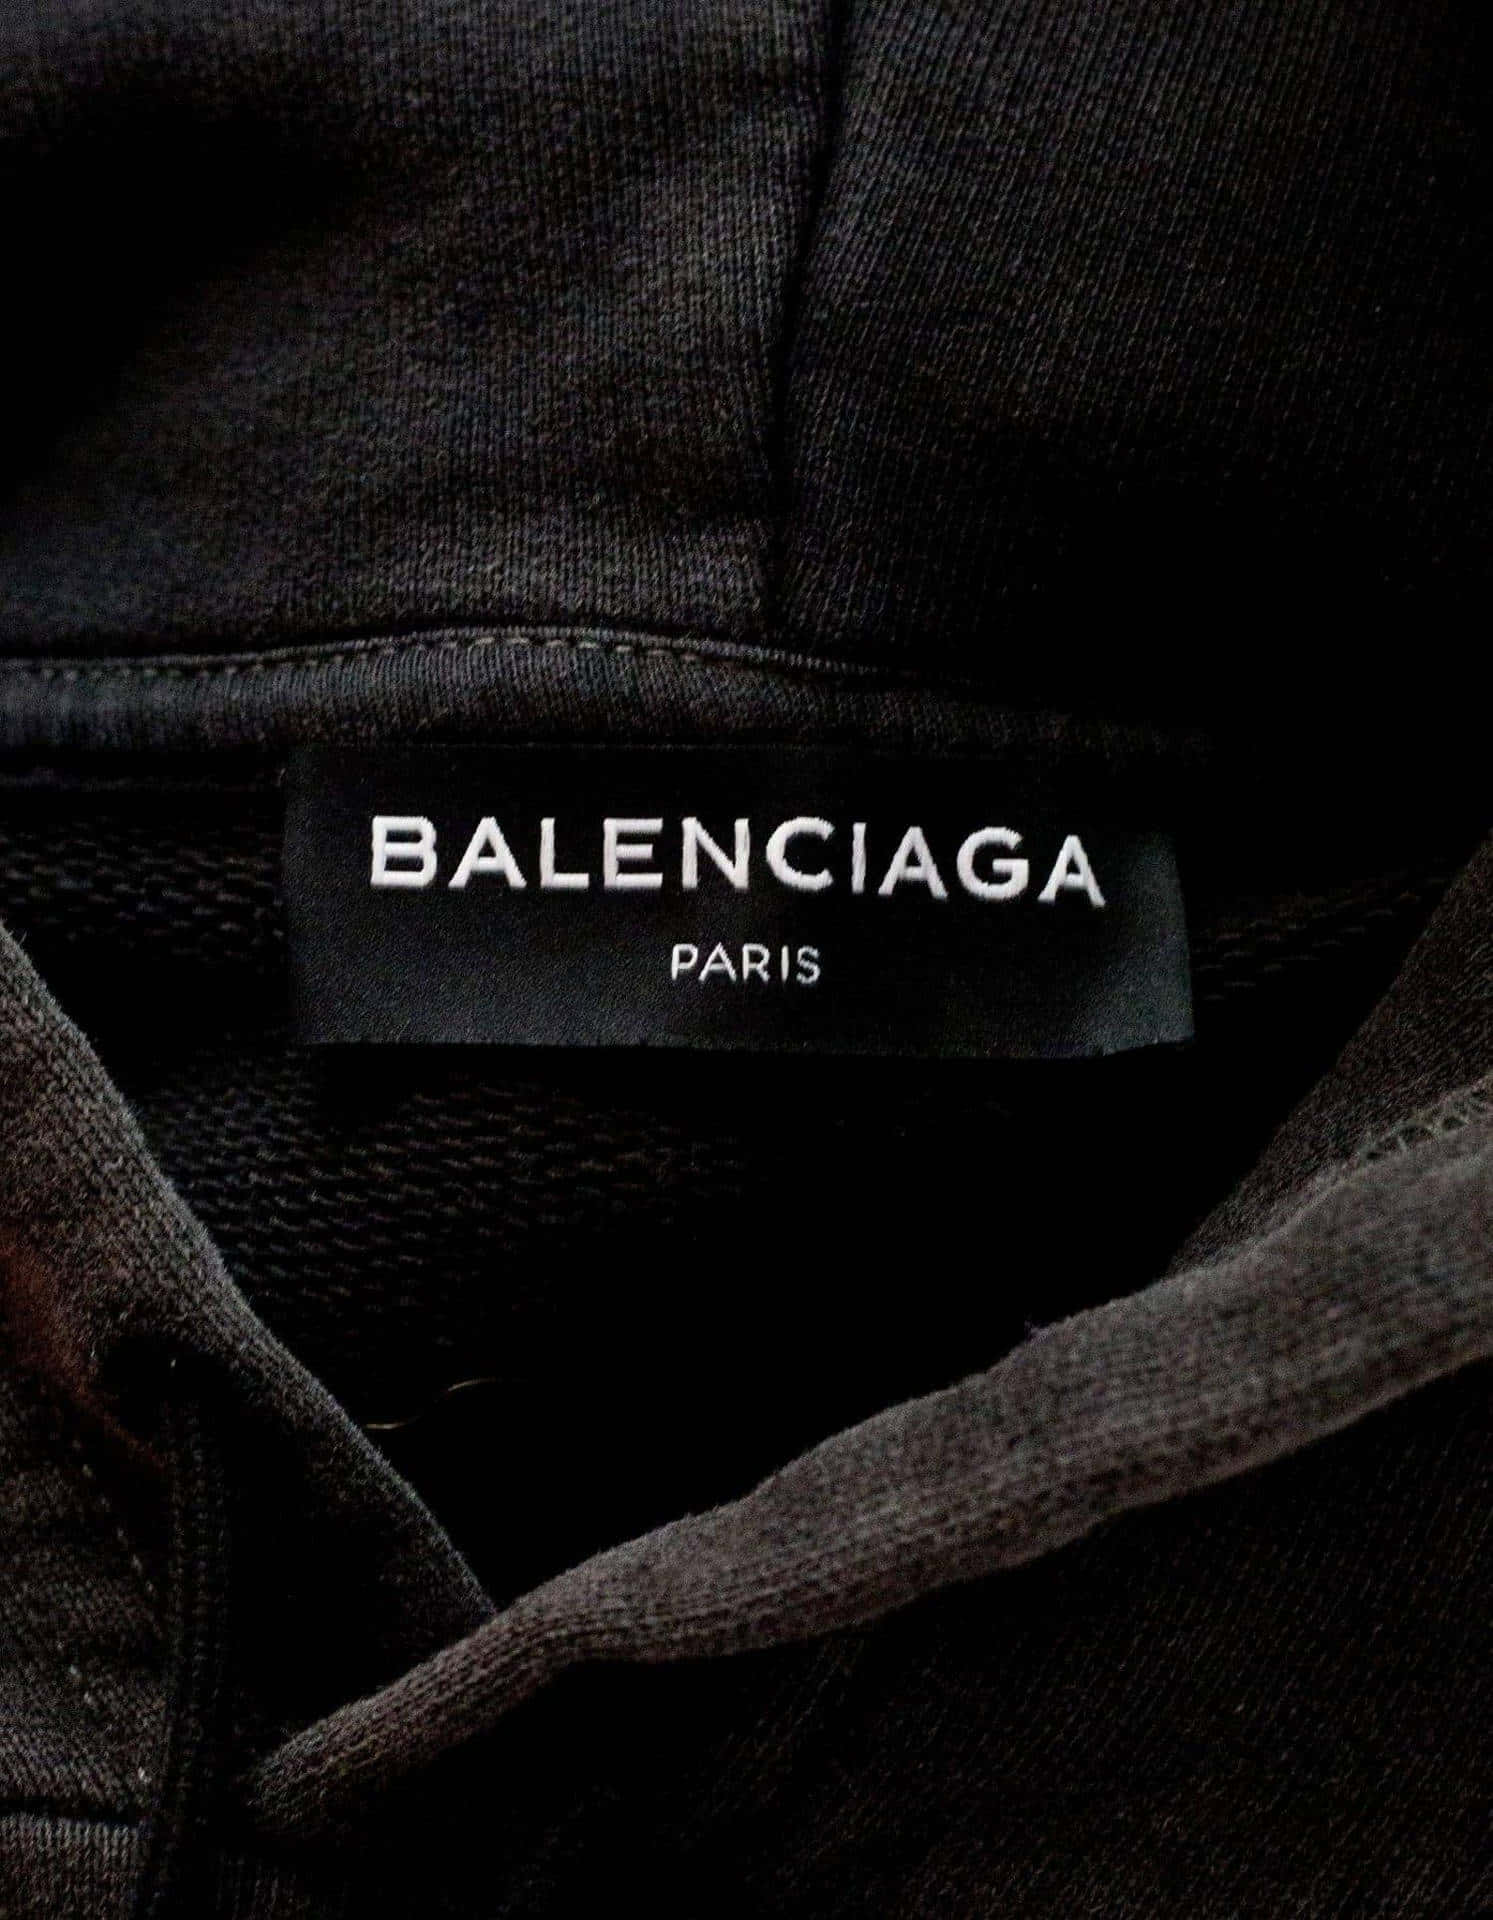 Gevoel bestuurder geeuwen Download The height of Haute Couture - Balenciaga | Wallpapers.com